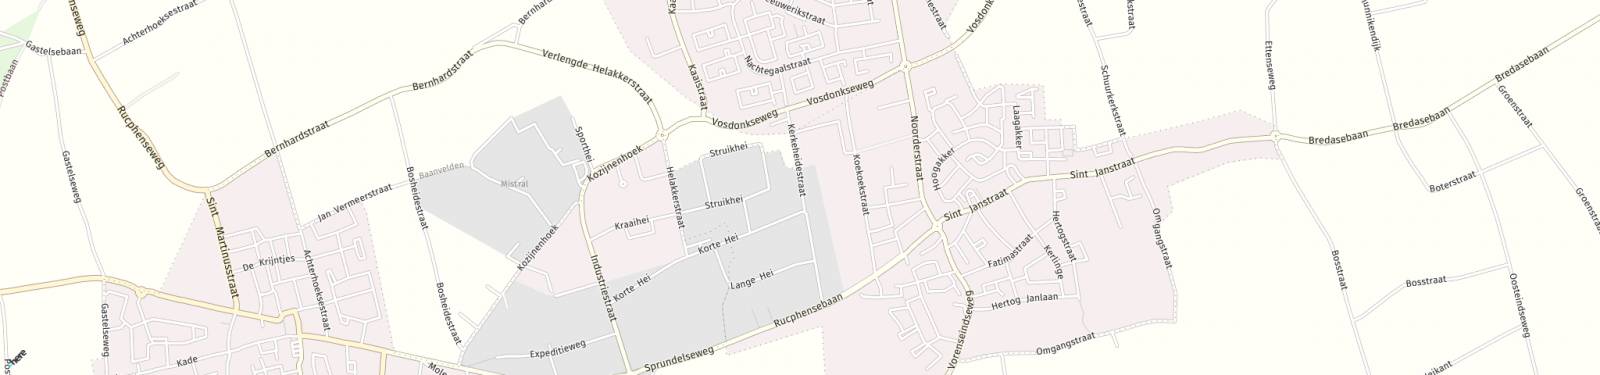 Kaart met locatie Bedrijfsruimte Kerkeheidestraat